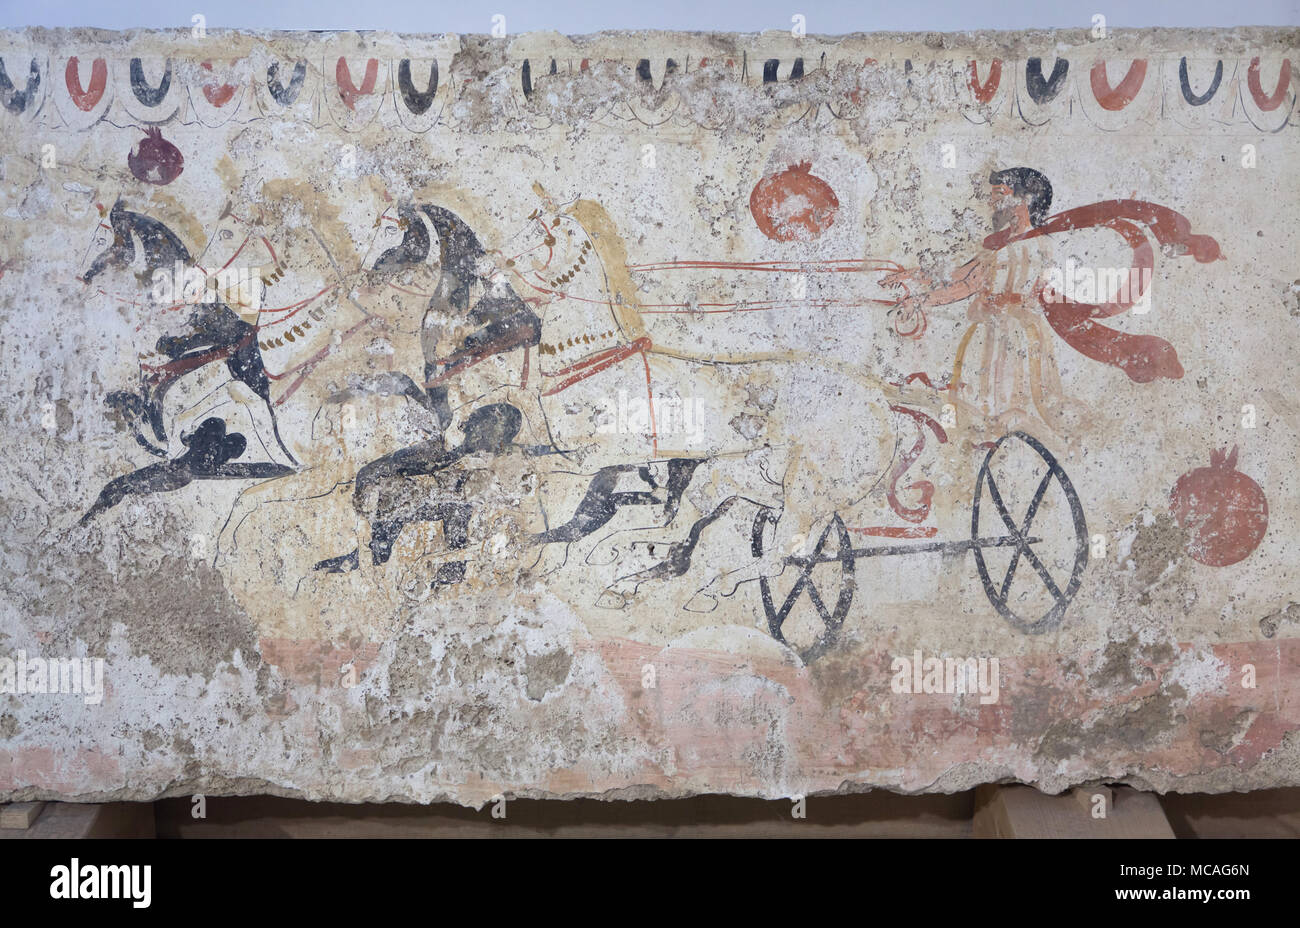 El Biga raza (la raza de Chariot) representada en el Lucanian fresco desde el siglo IV A.C. en exhibición en el Museo Arqueológico de Paestum (Museo Archeologico di Paestum) en Paestum, Campania, Italia. Foto de stock